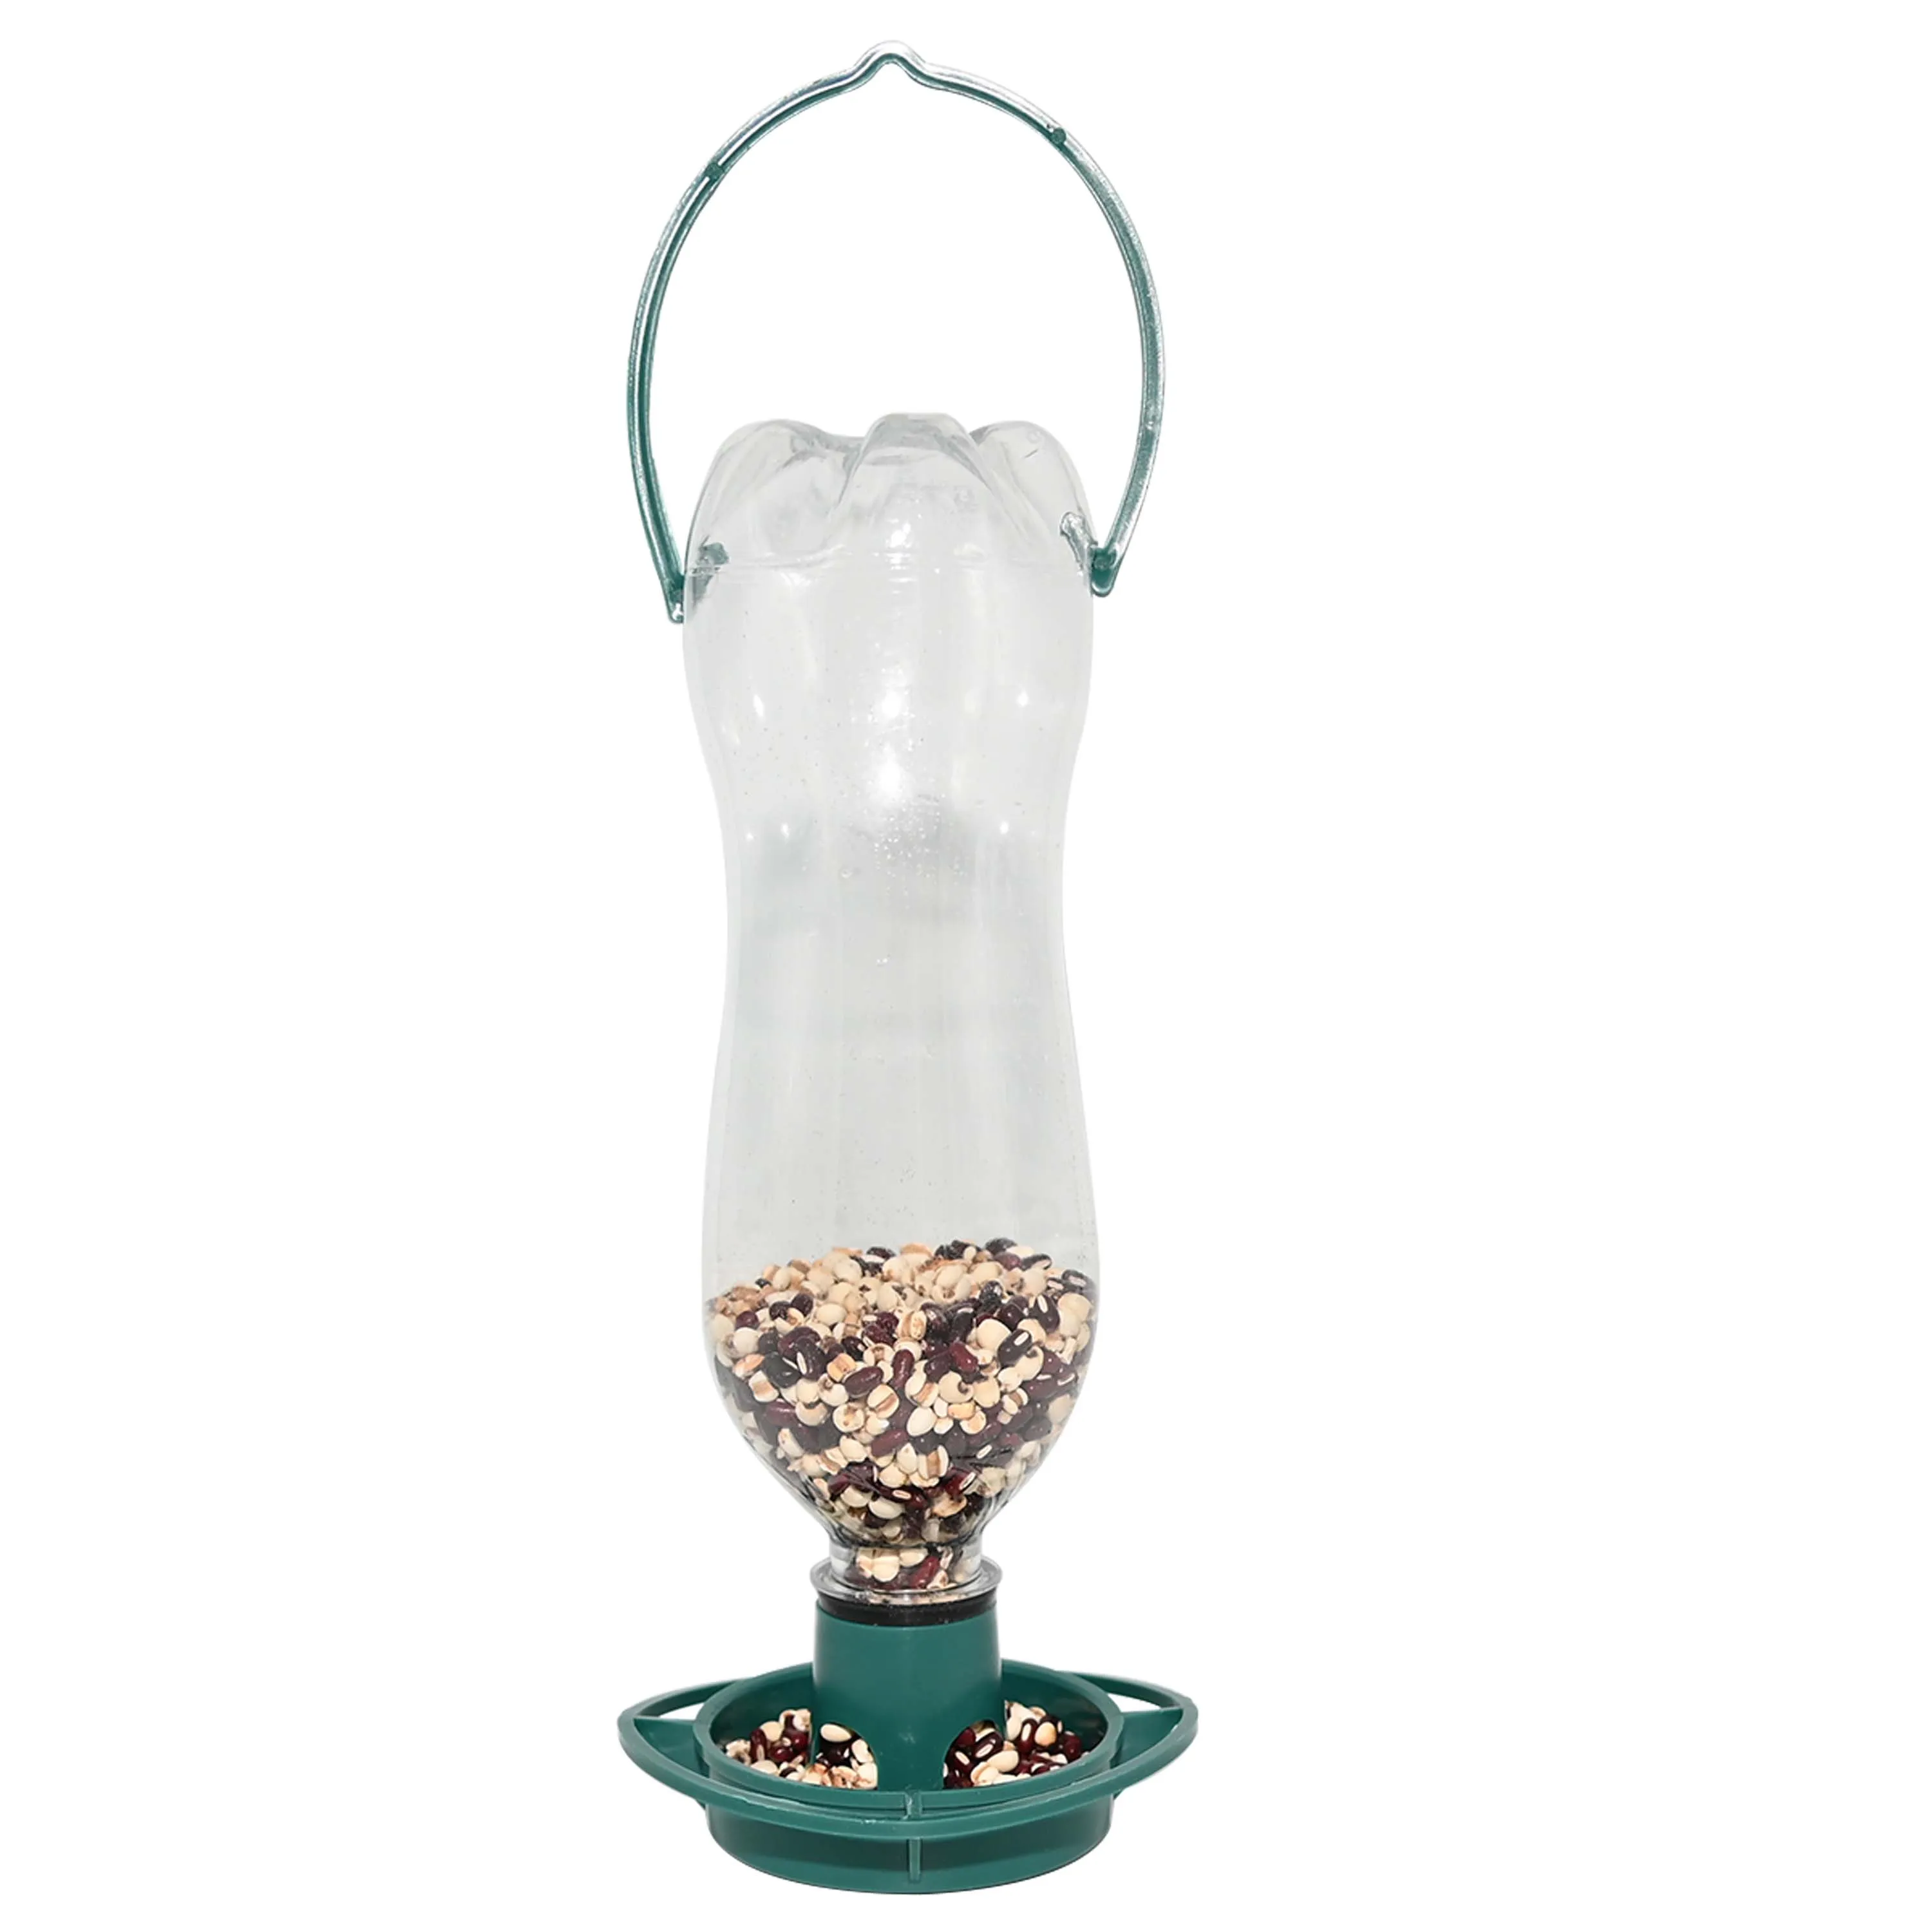 Kundenspezifischer fühlter tragbarer hängender Plastikflaschen-top-Vogel-Feeder mit einem Bewässerungskomfort mit einem Bewässerungskreislauf-Flaschen-Feeder